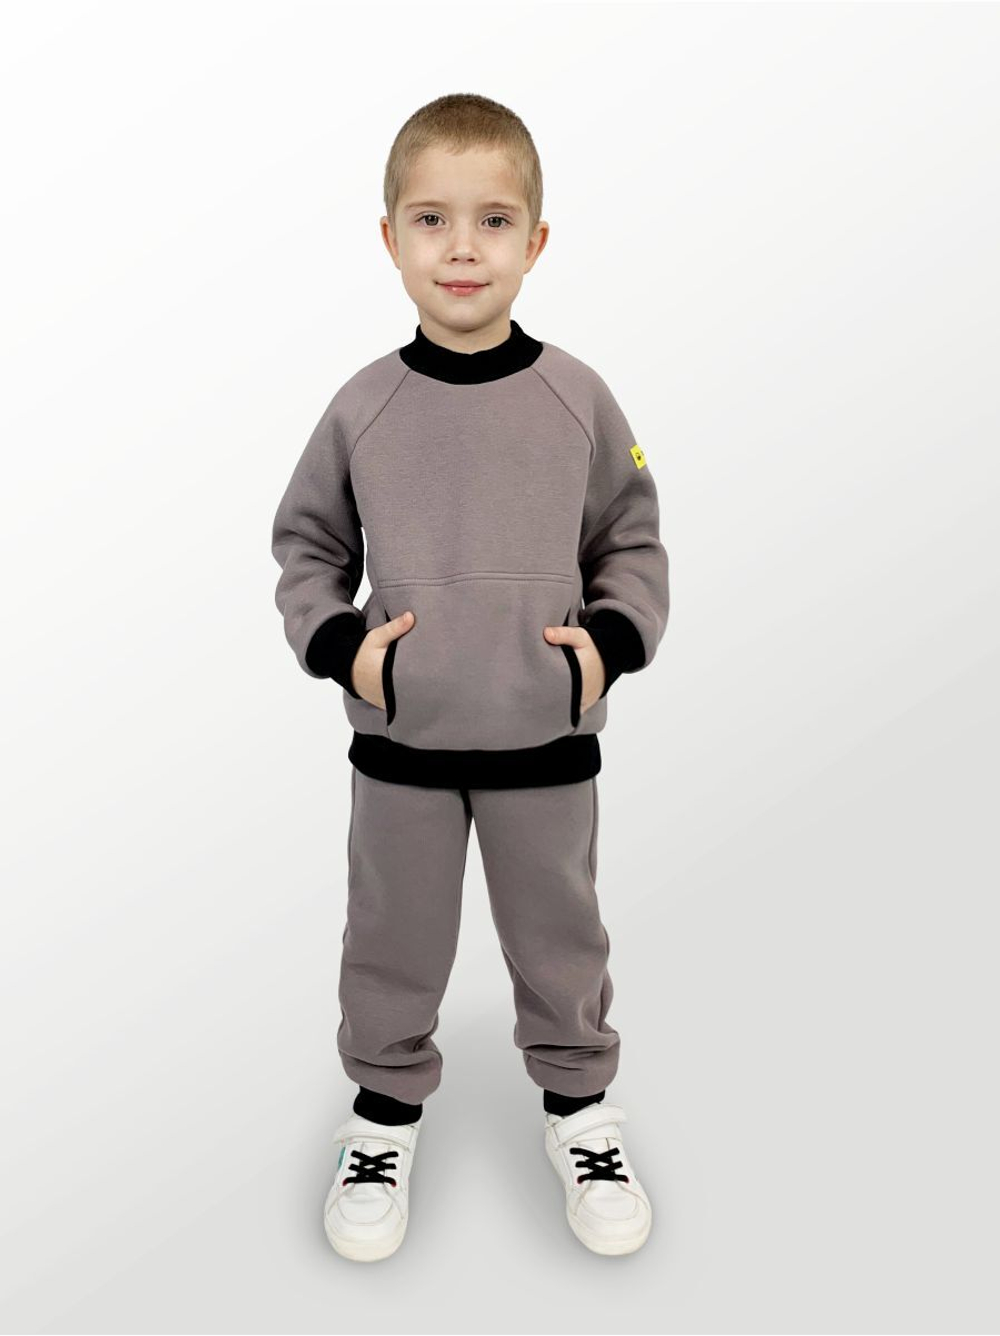 Худи для детей, модель №3, утепленный, рост 92 см, серый